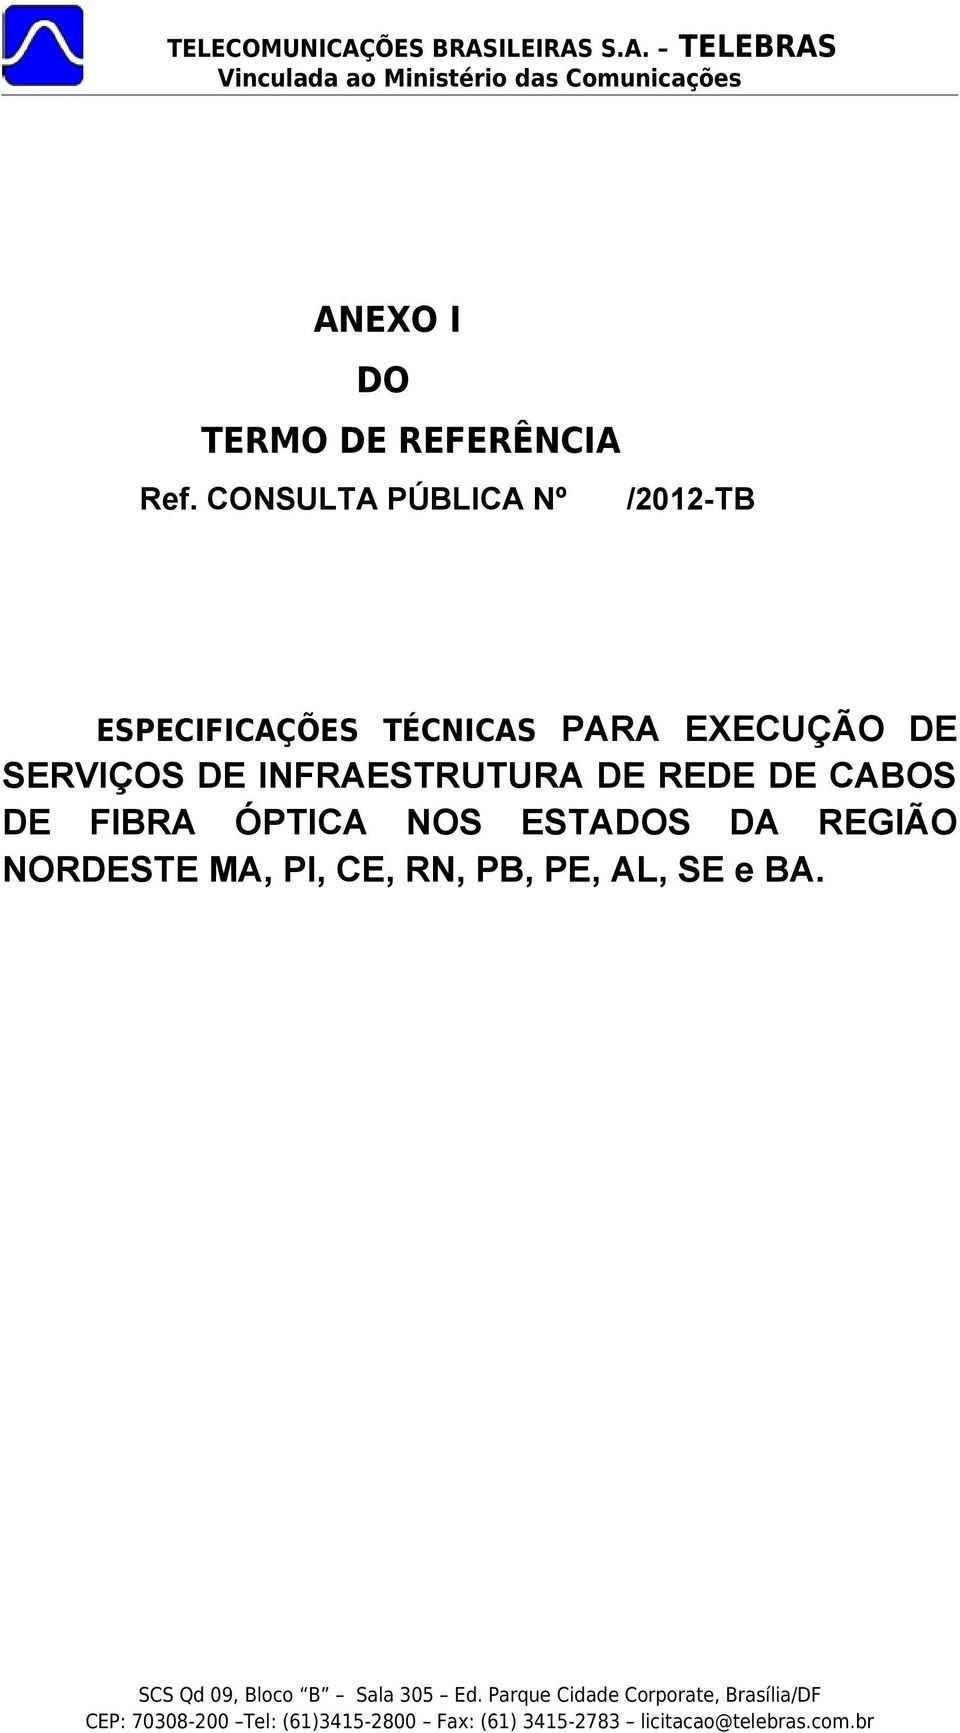 EXECUÇÃO DE SERVIÇOS DE INFRAESTRUTURA DE REDE DE CABOS DE